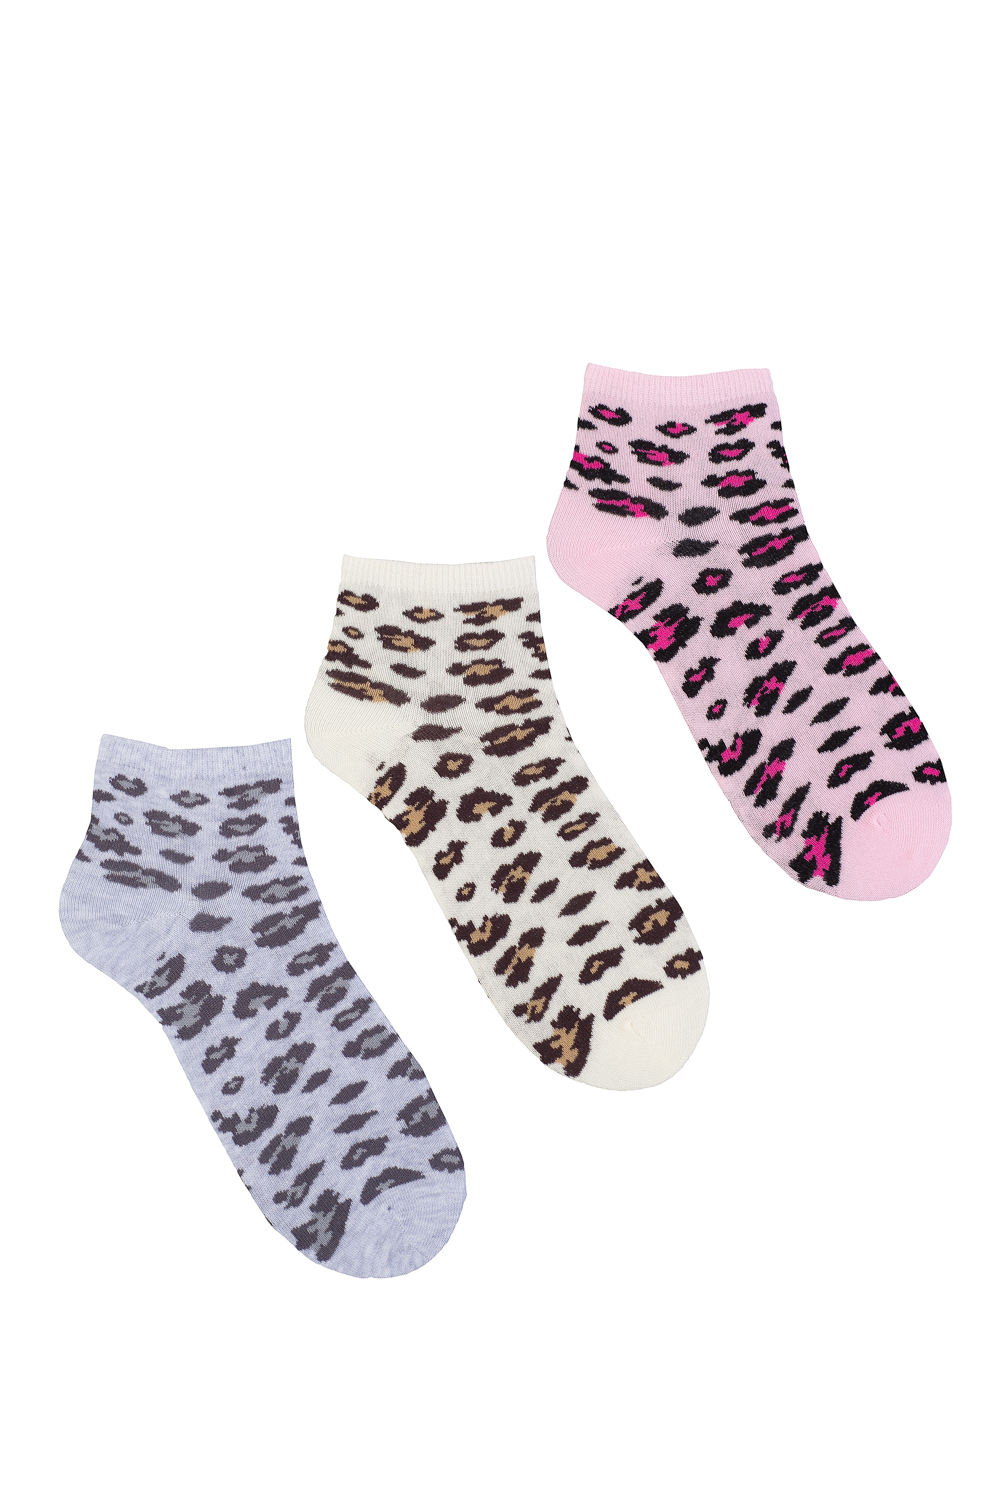 Носки женские "Леопард" укороченные в упаковке, 6 пар